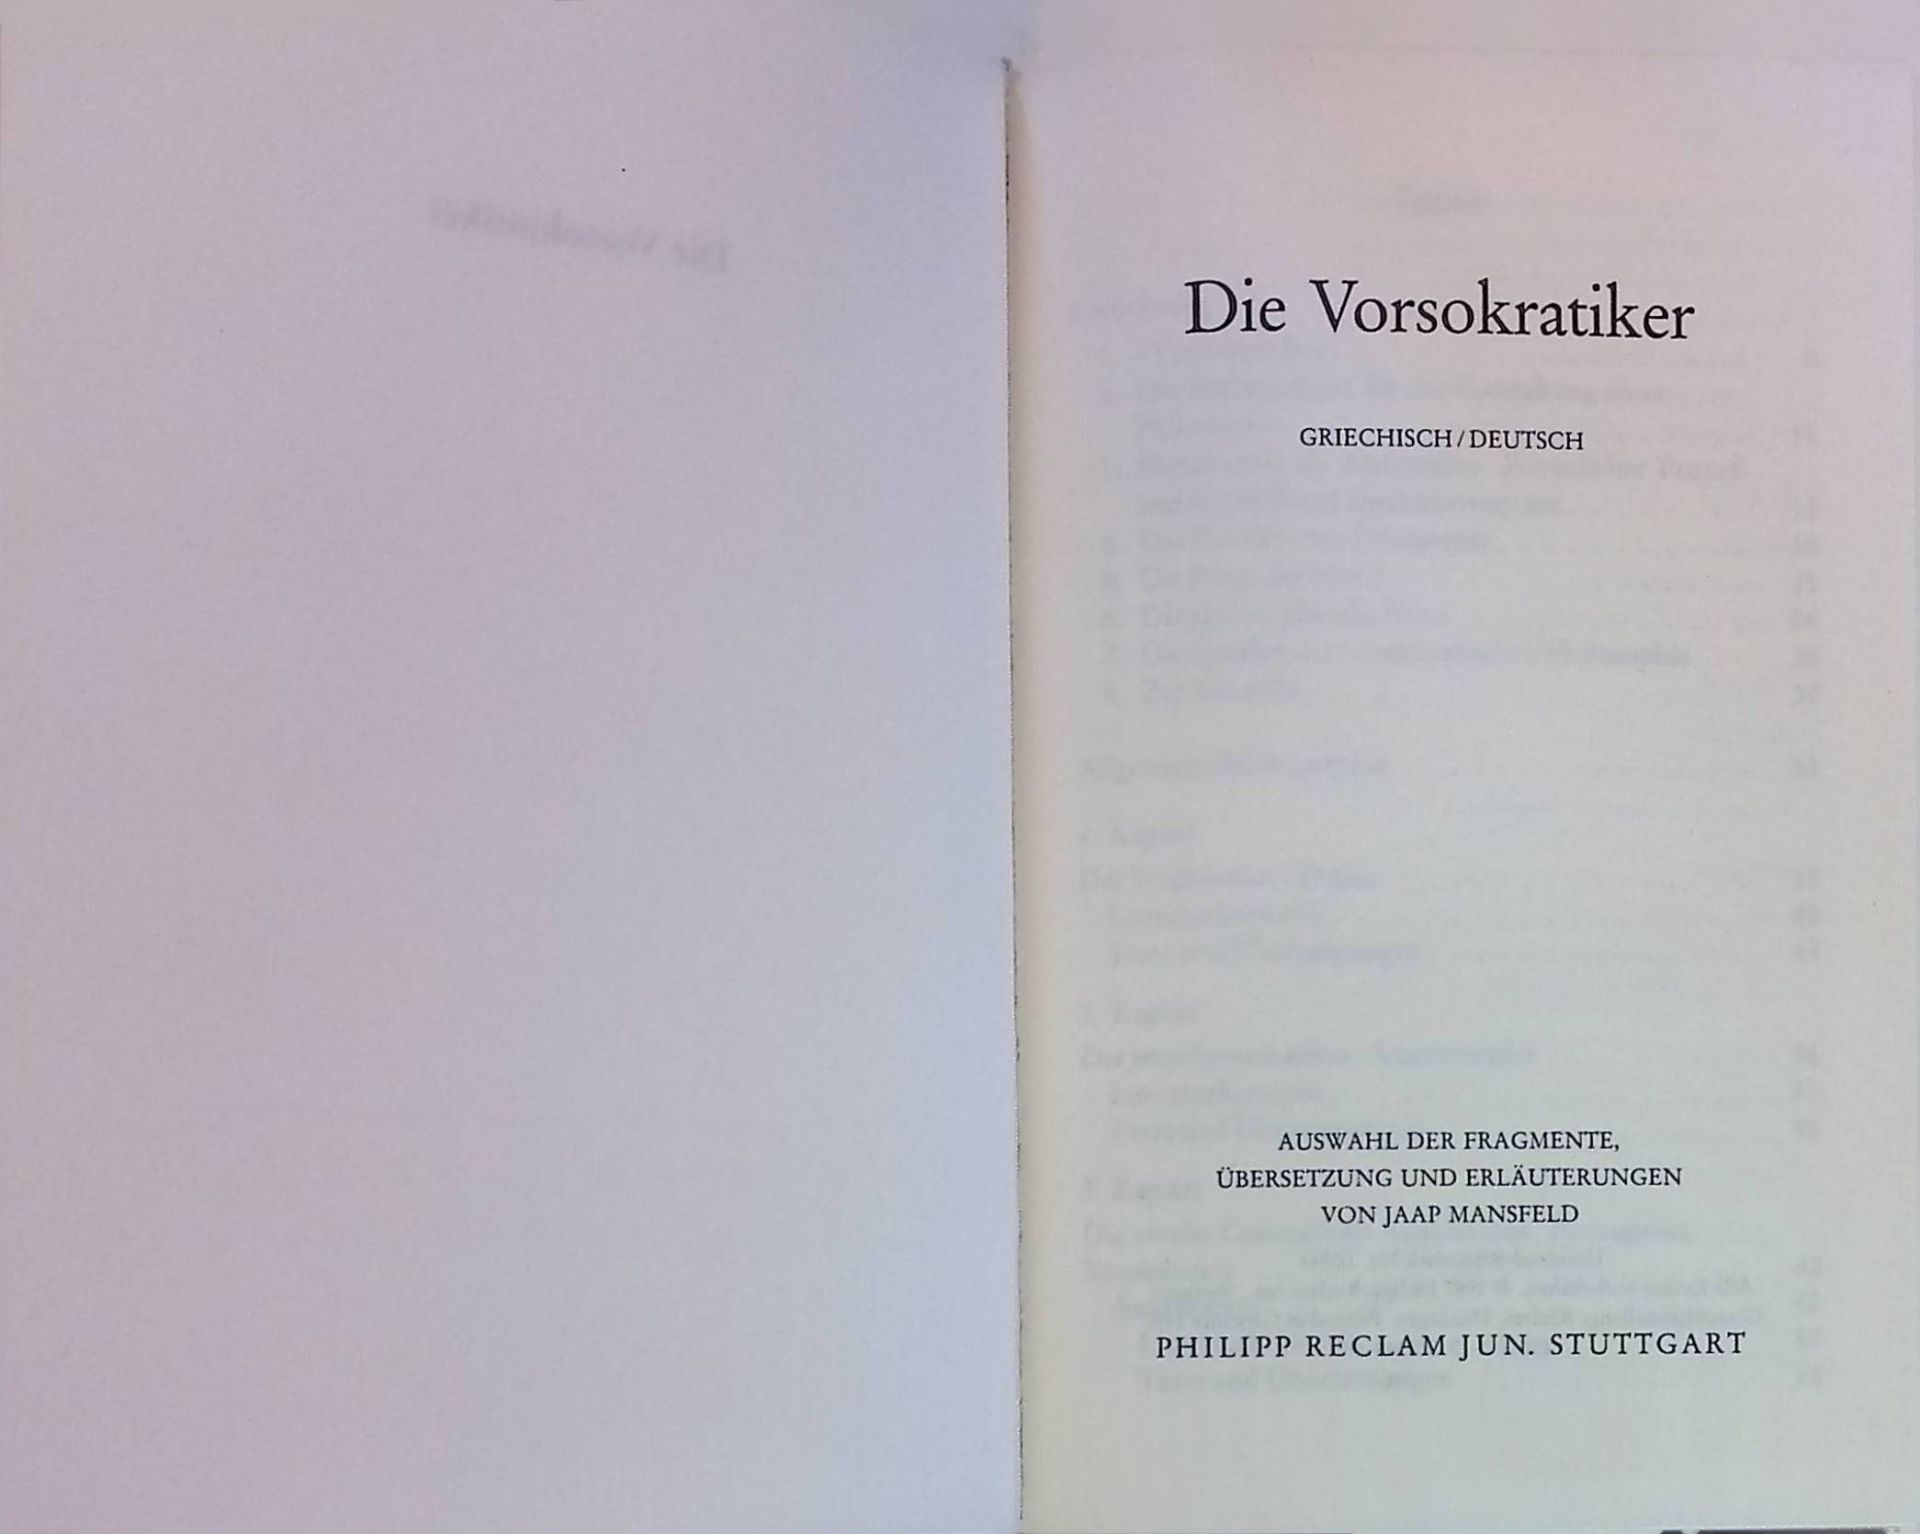 Die Vorsokratiker : Griechisch/Deutsch Universal-Bibliothek Nr. 10344 - Mansfeld, Jaap